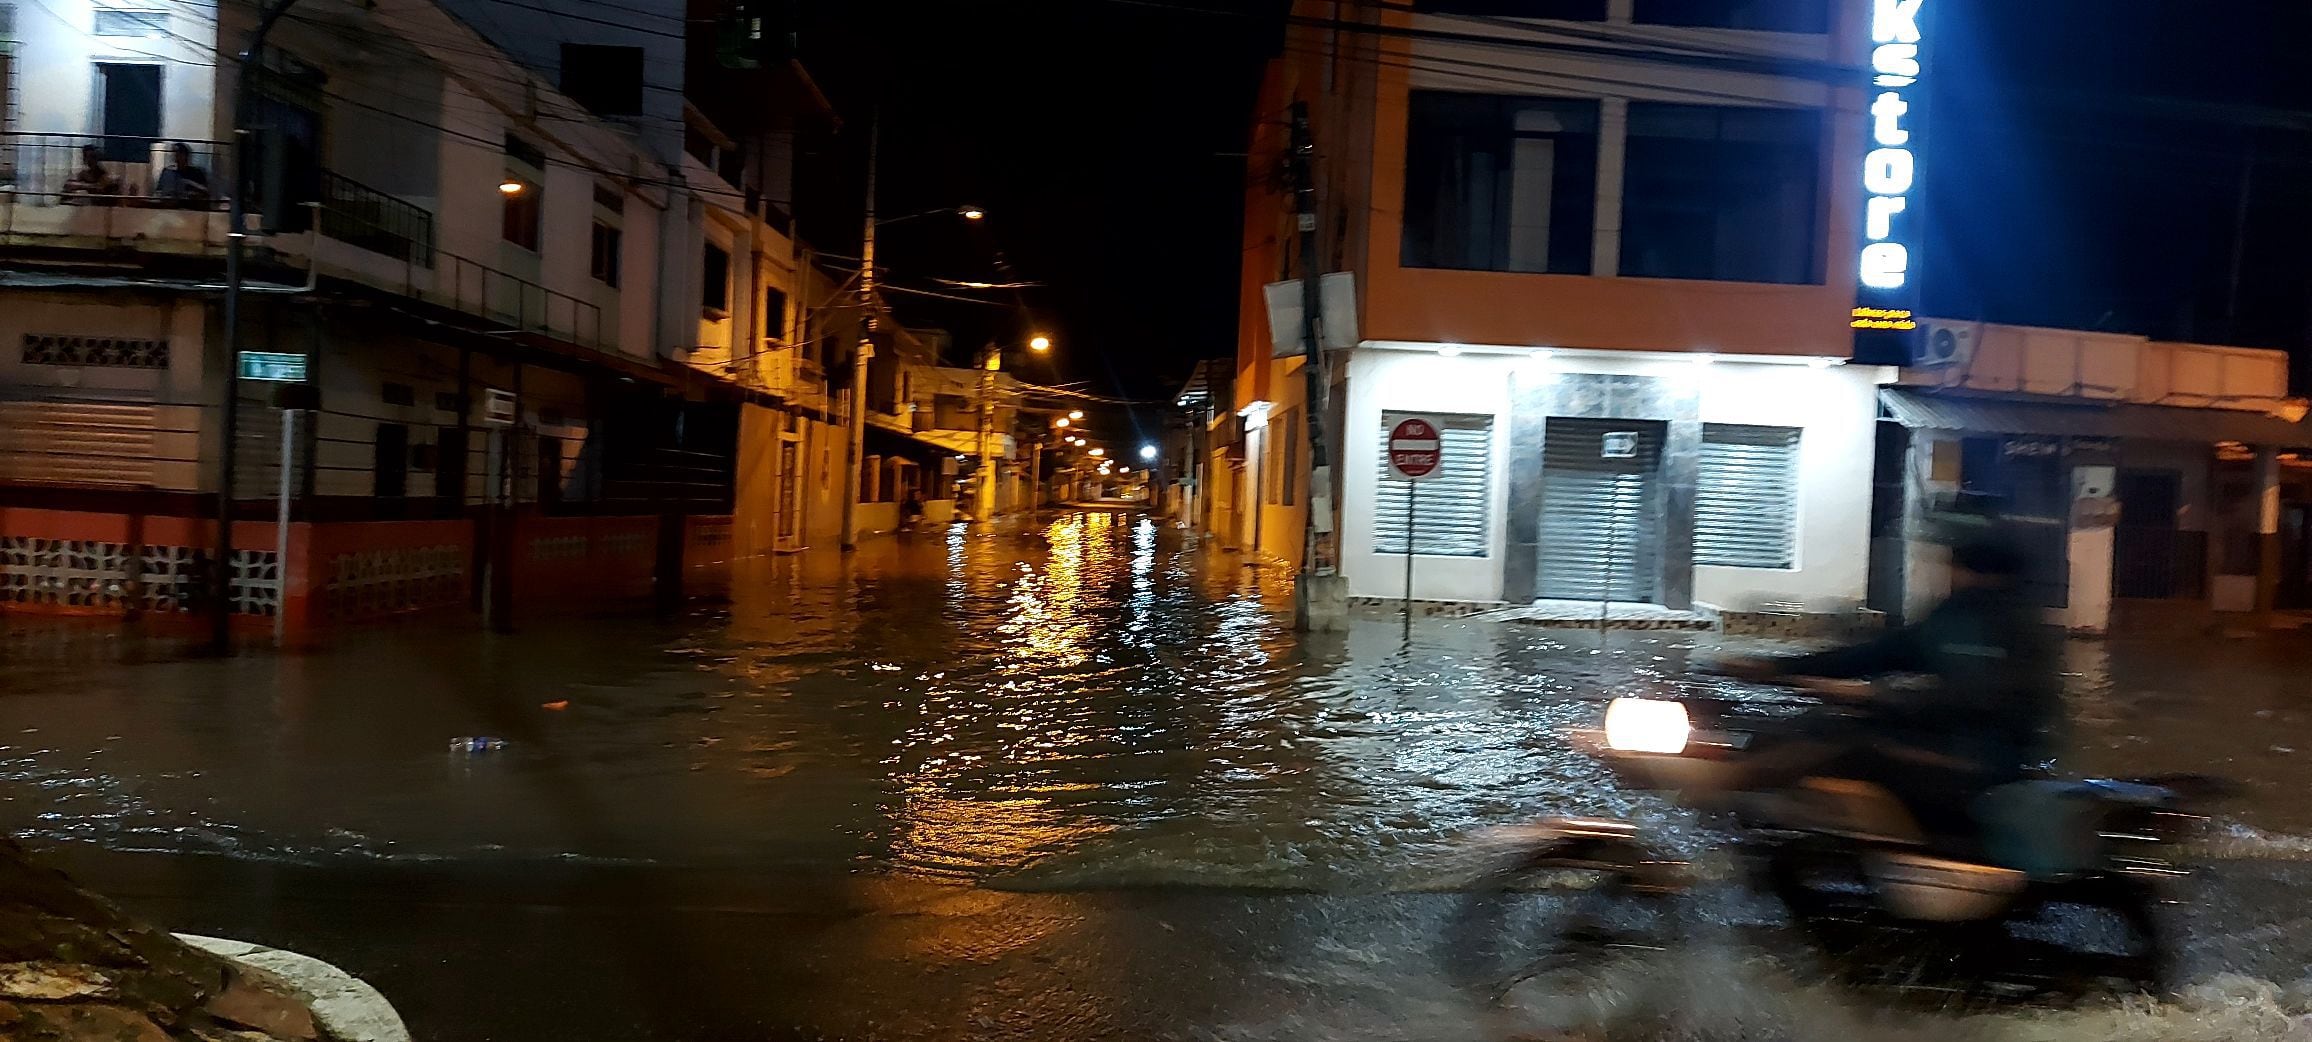 Calles inundadas en Milagro por fuerte lluvia